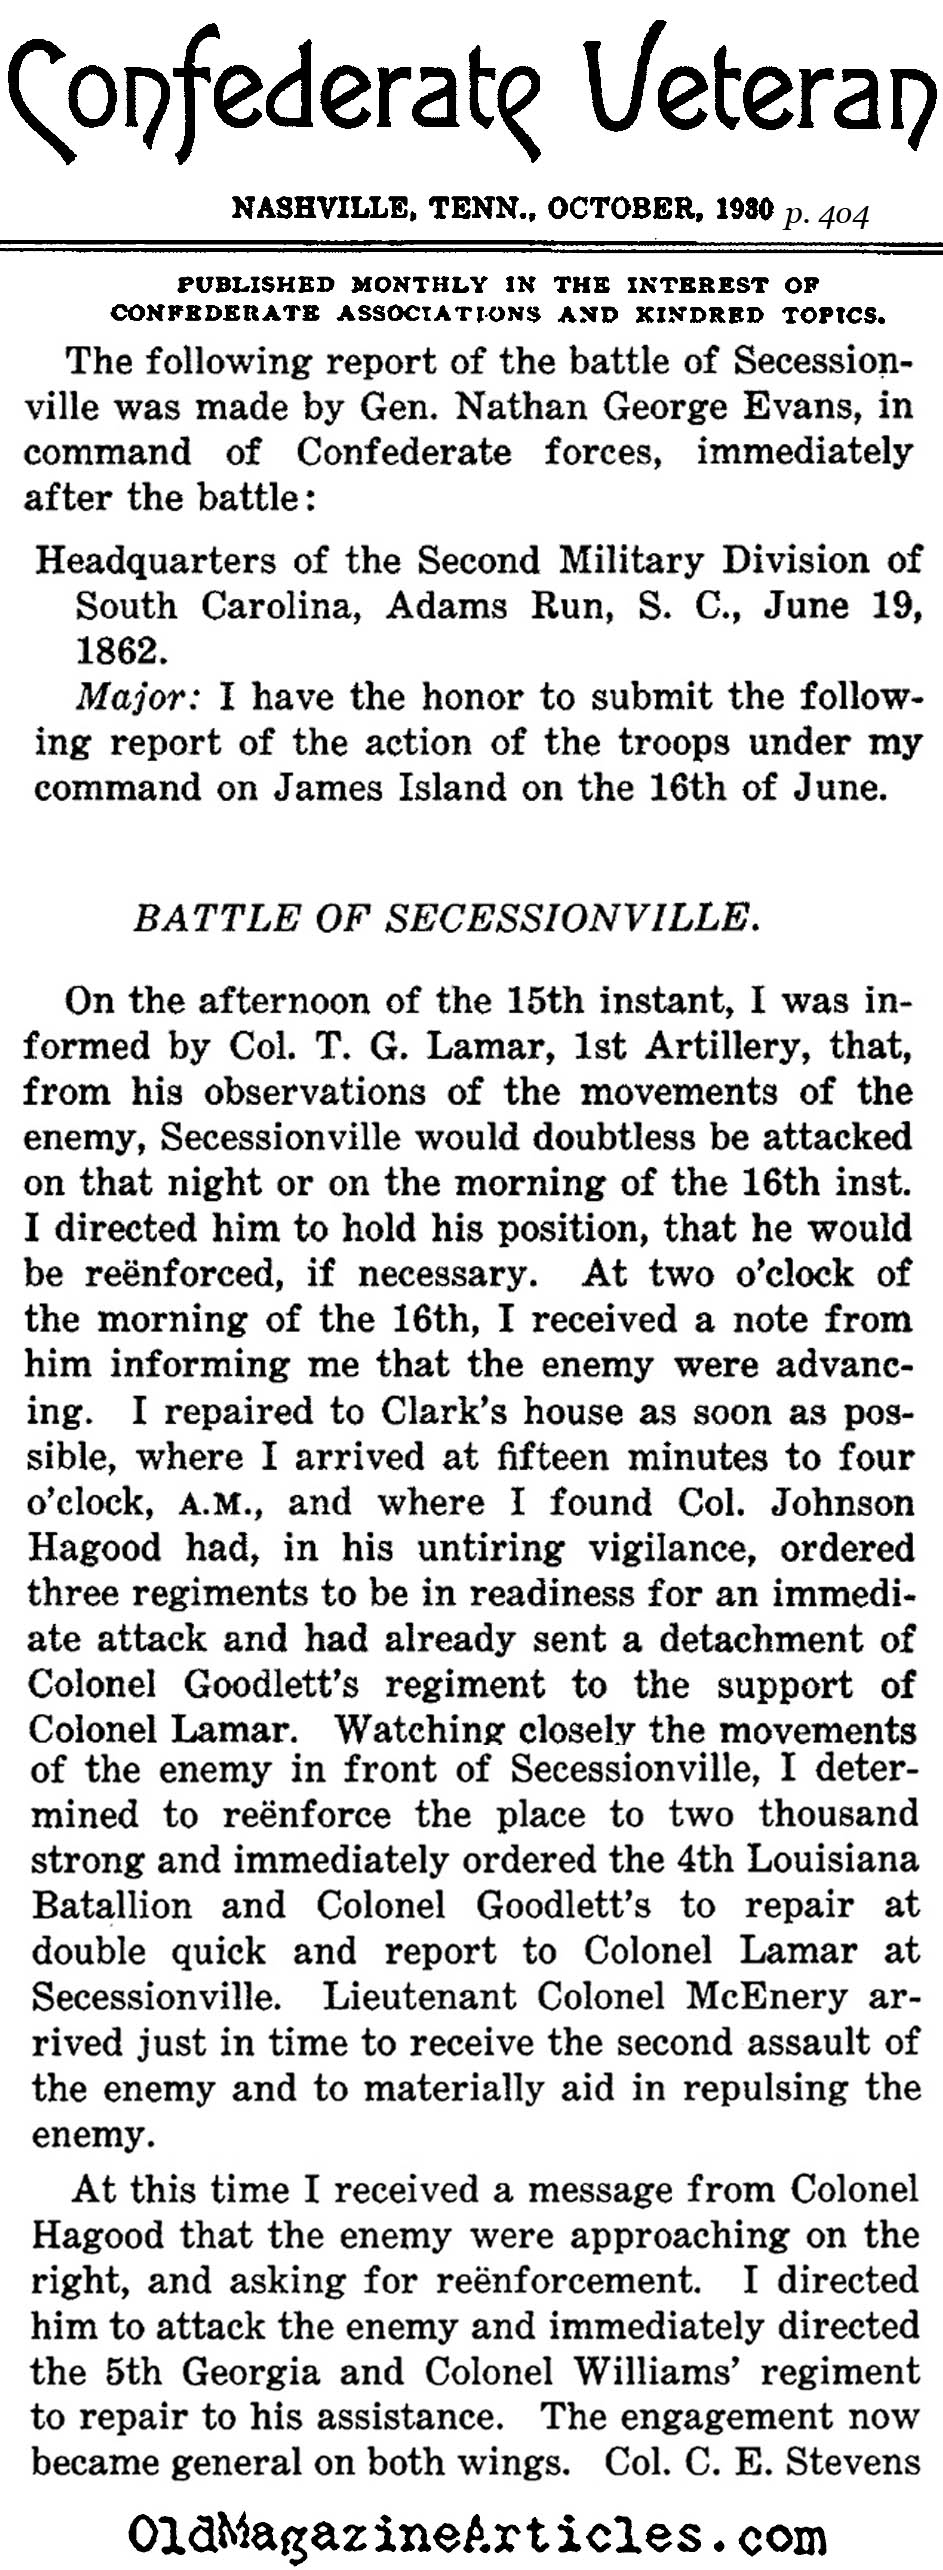 Rebel Victory at Secessionville (Confederate Veteran, 1930)